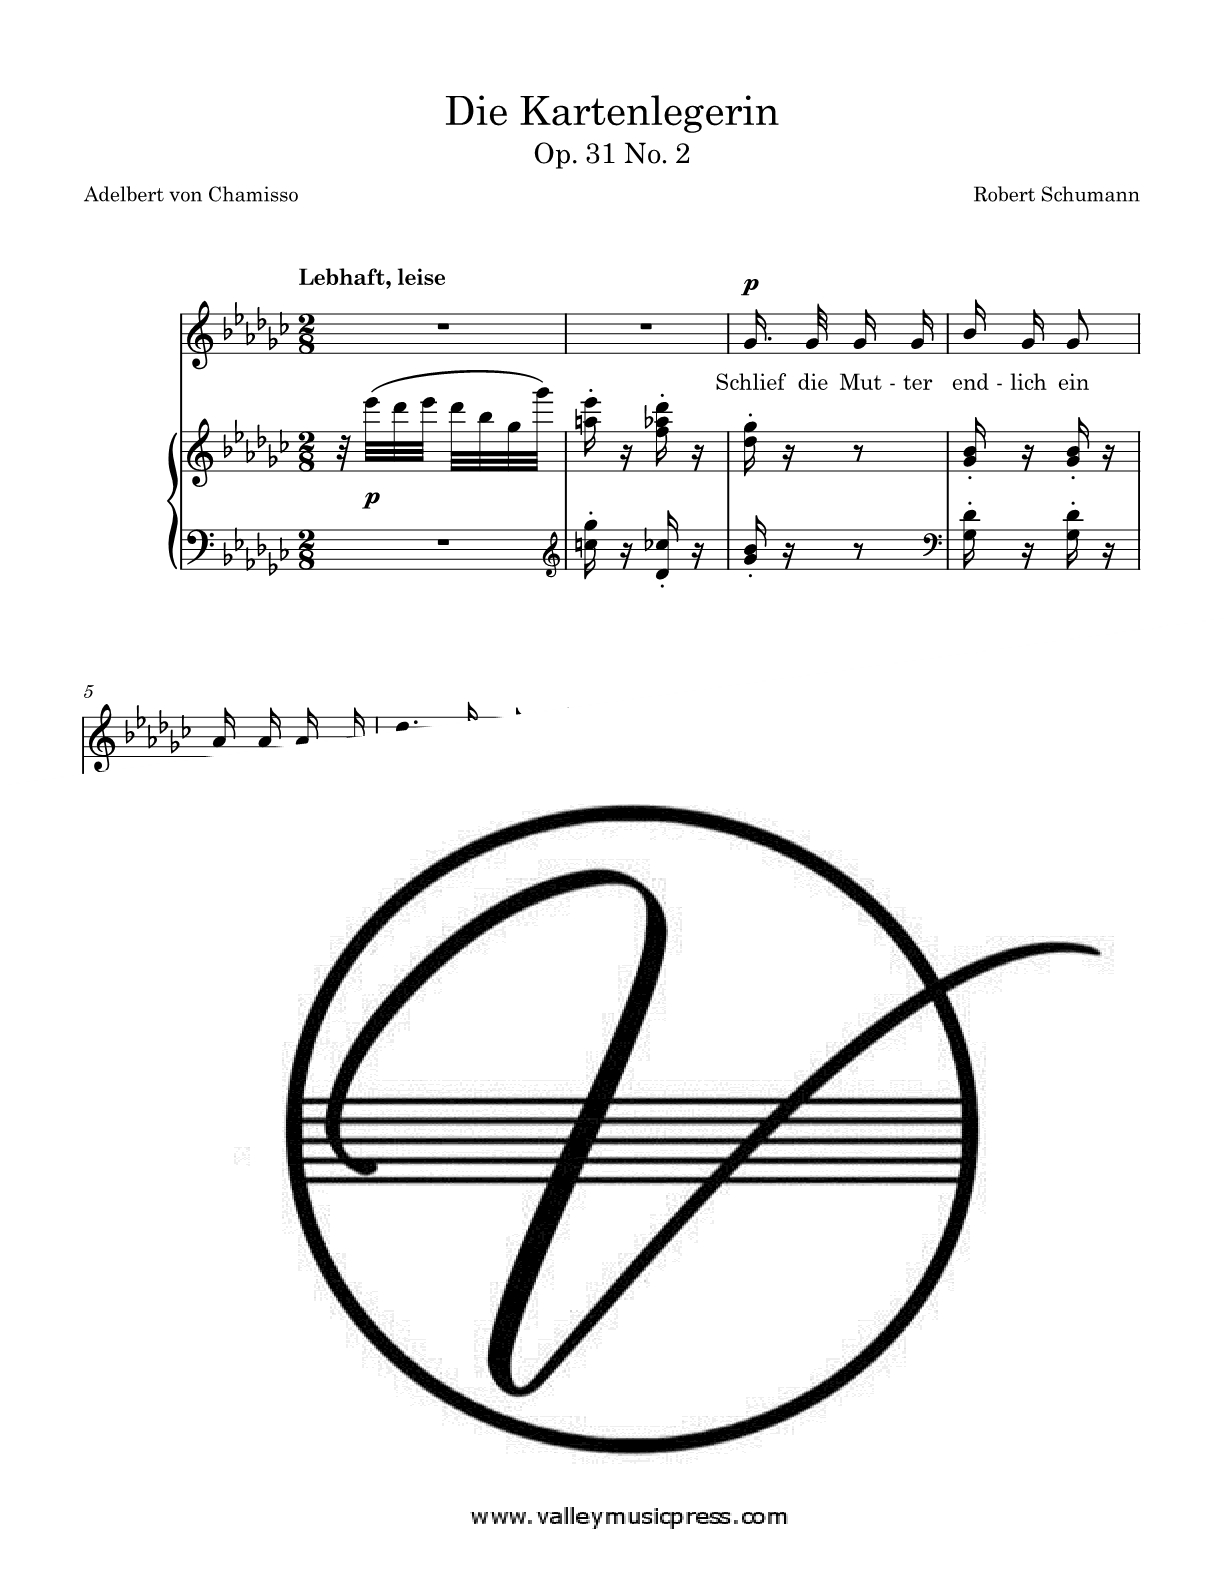 Schumann - Die Kartenlegerin Op. 31 No. 2 (Voice) - Click Image to Close